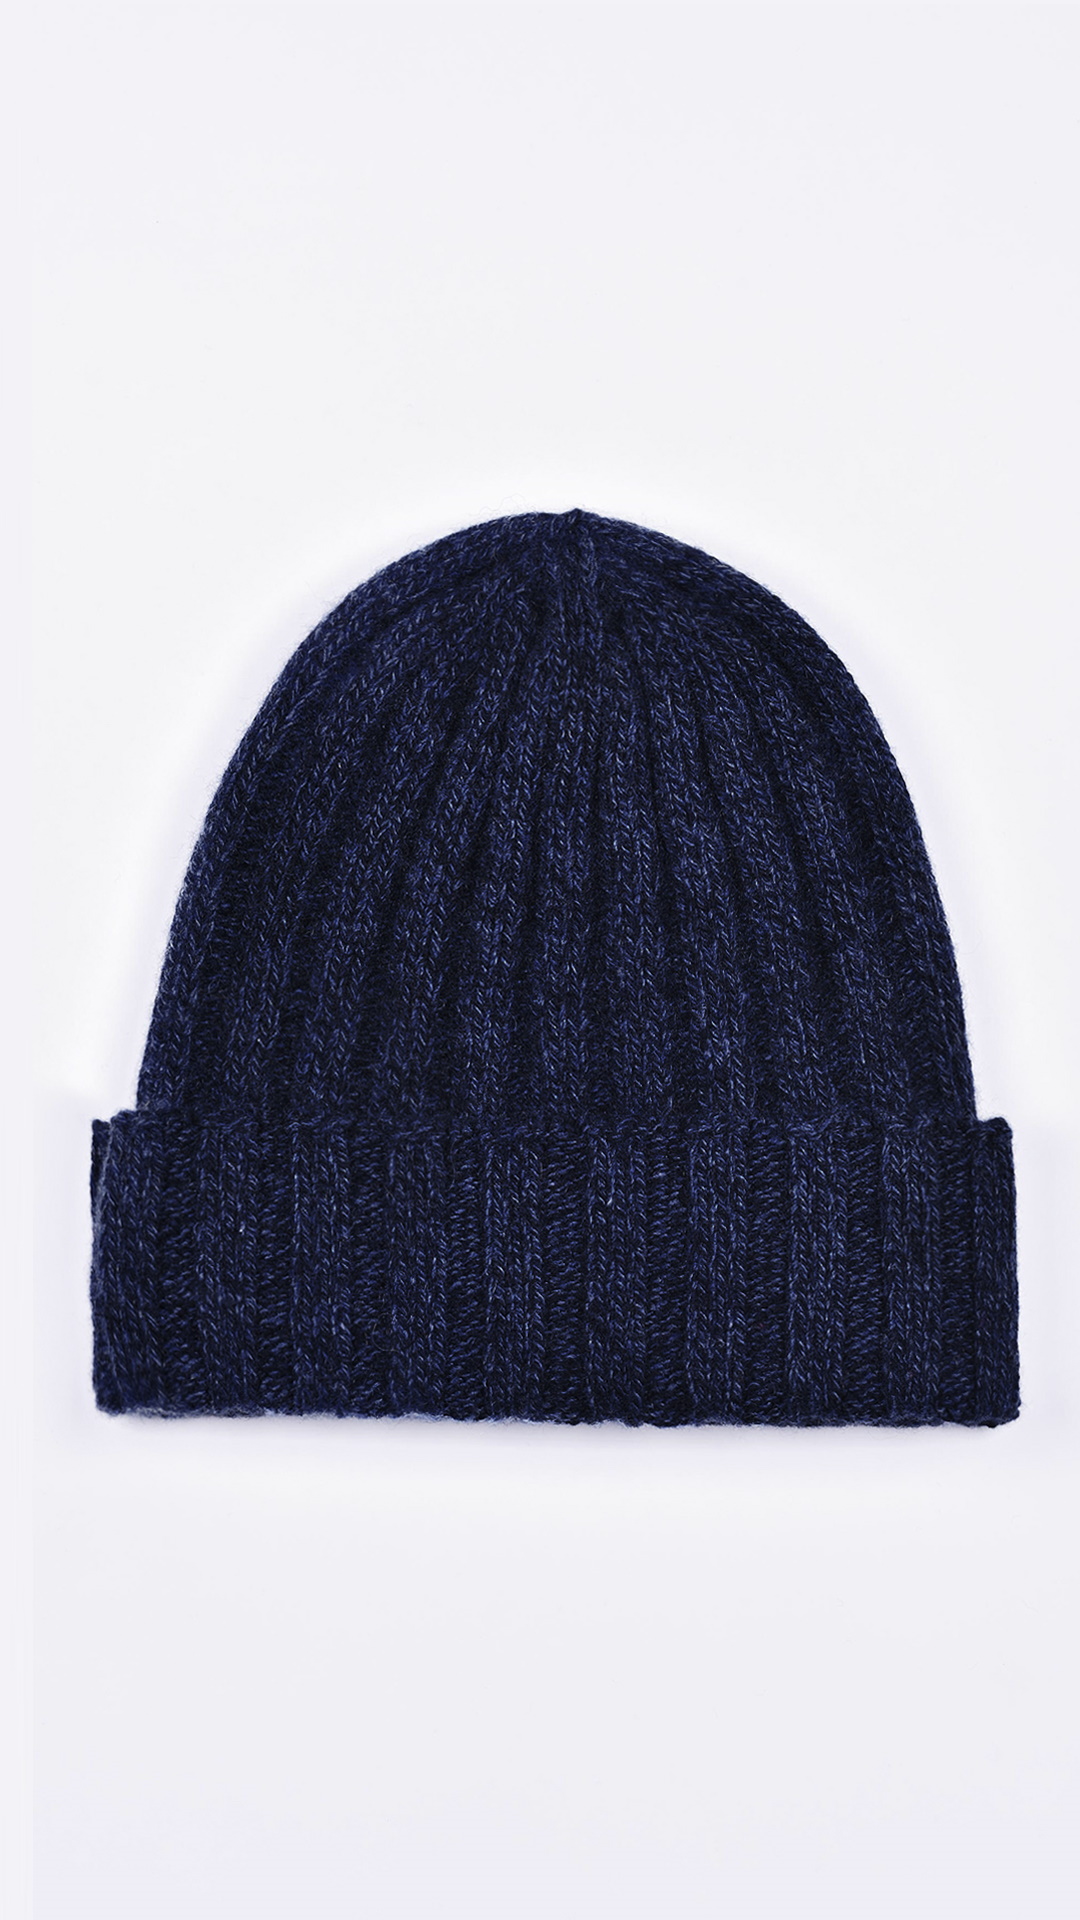 Henrydario blu m 1 2 1stAmerican cappellino 100% puro cashmere Made in Italy da uomo - caldo berretto invernale a coste larghe